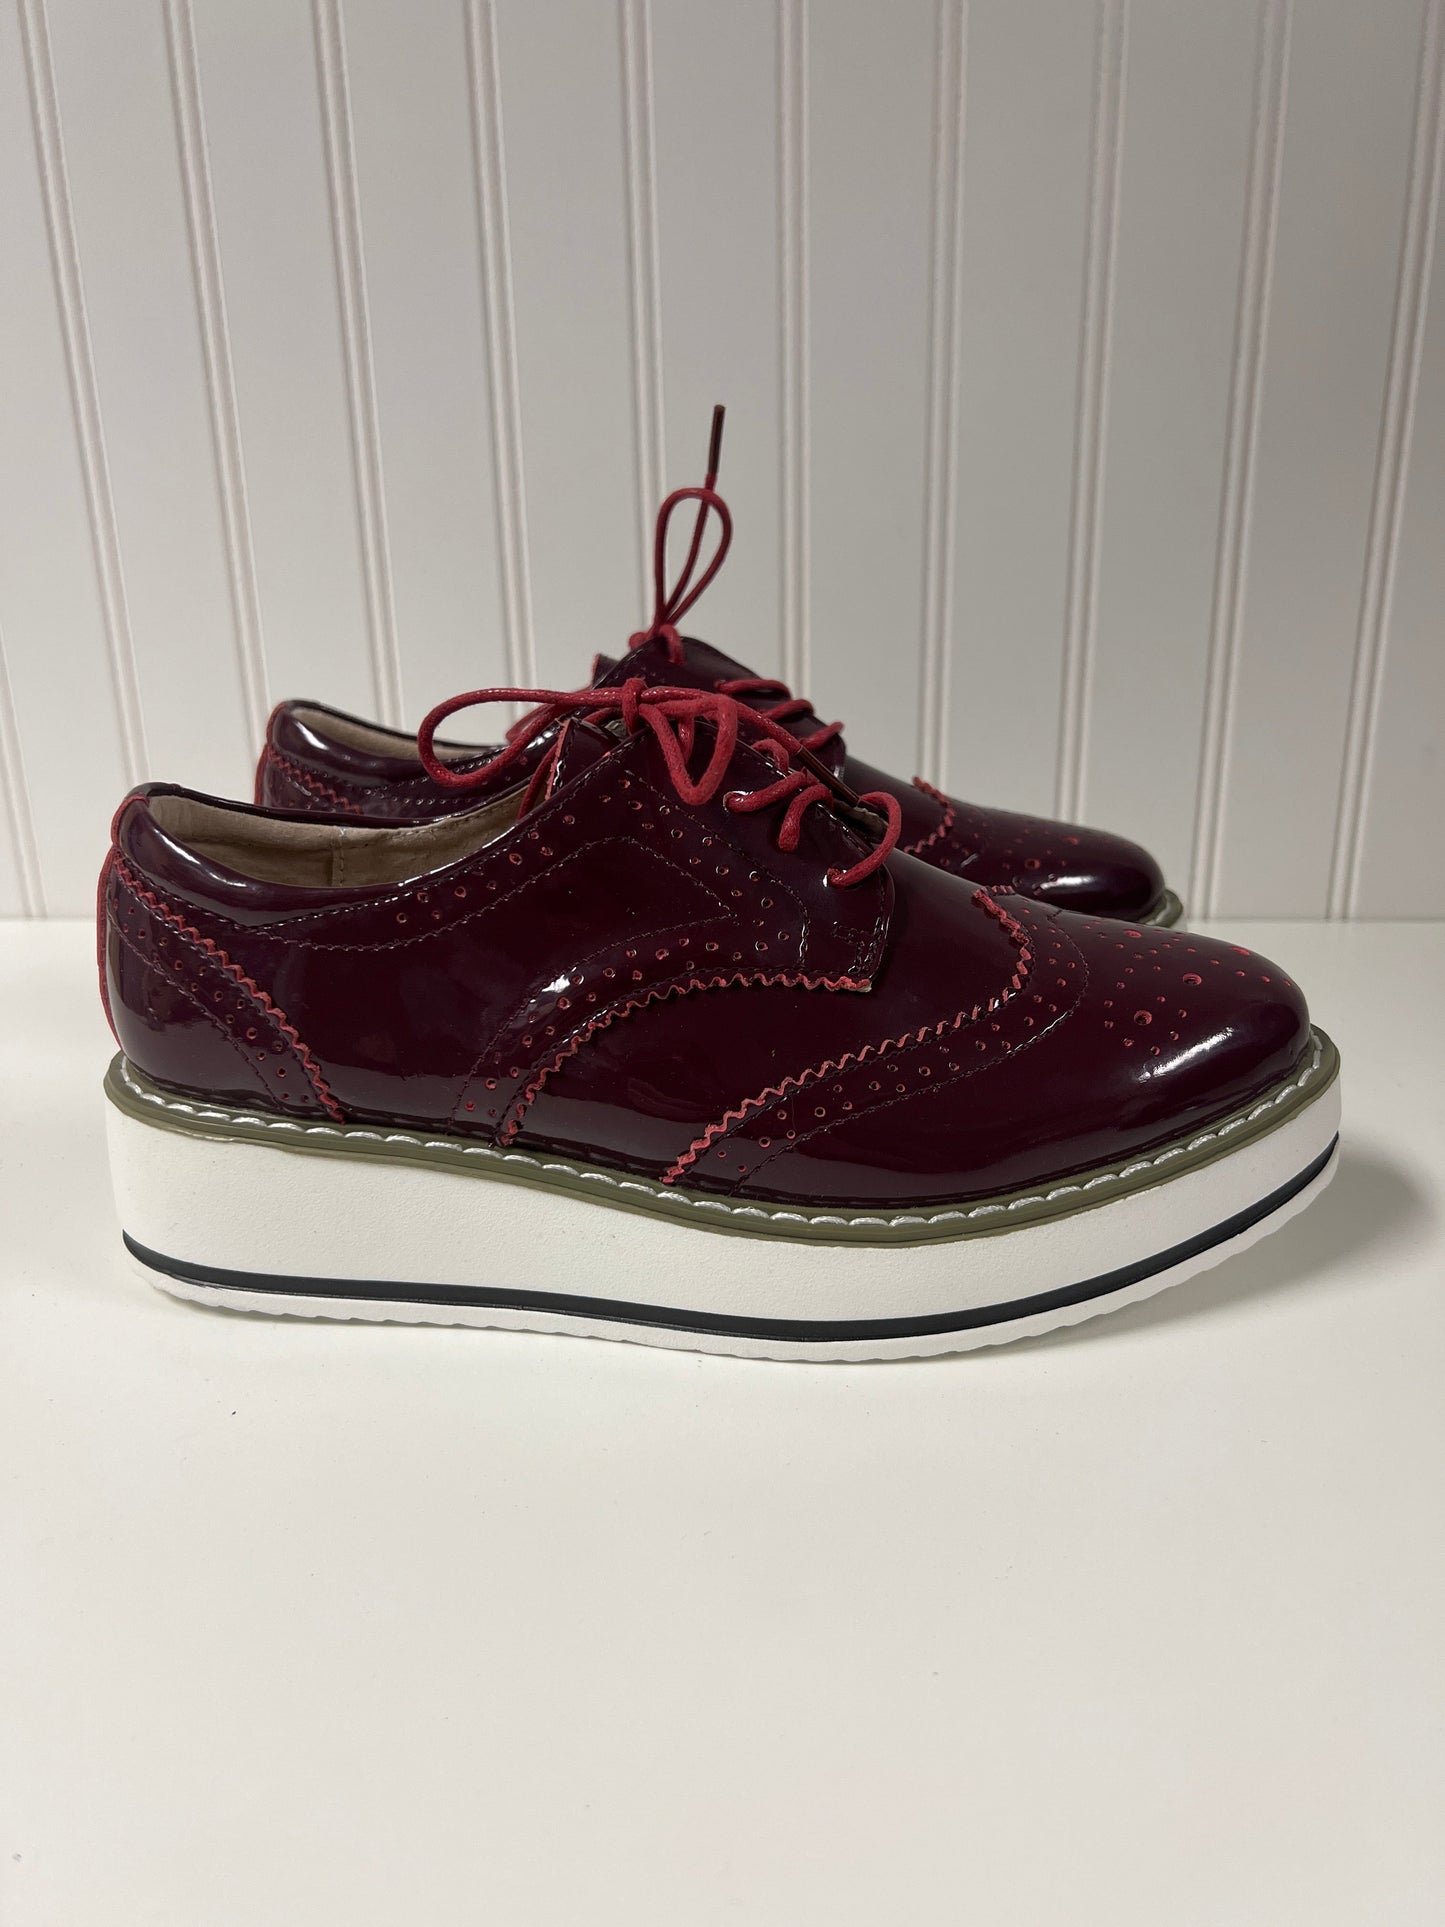 Purple Shoes Flats Clothes Mentor, Size 8.5